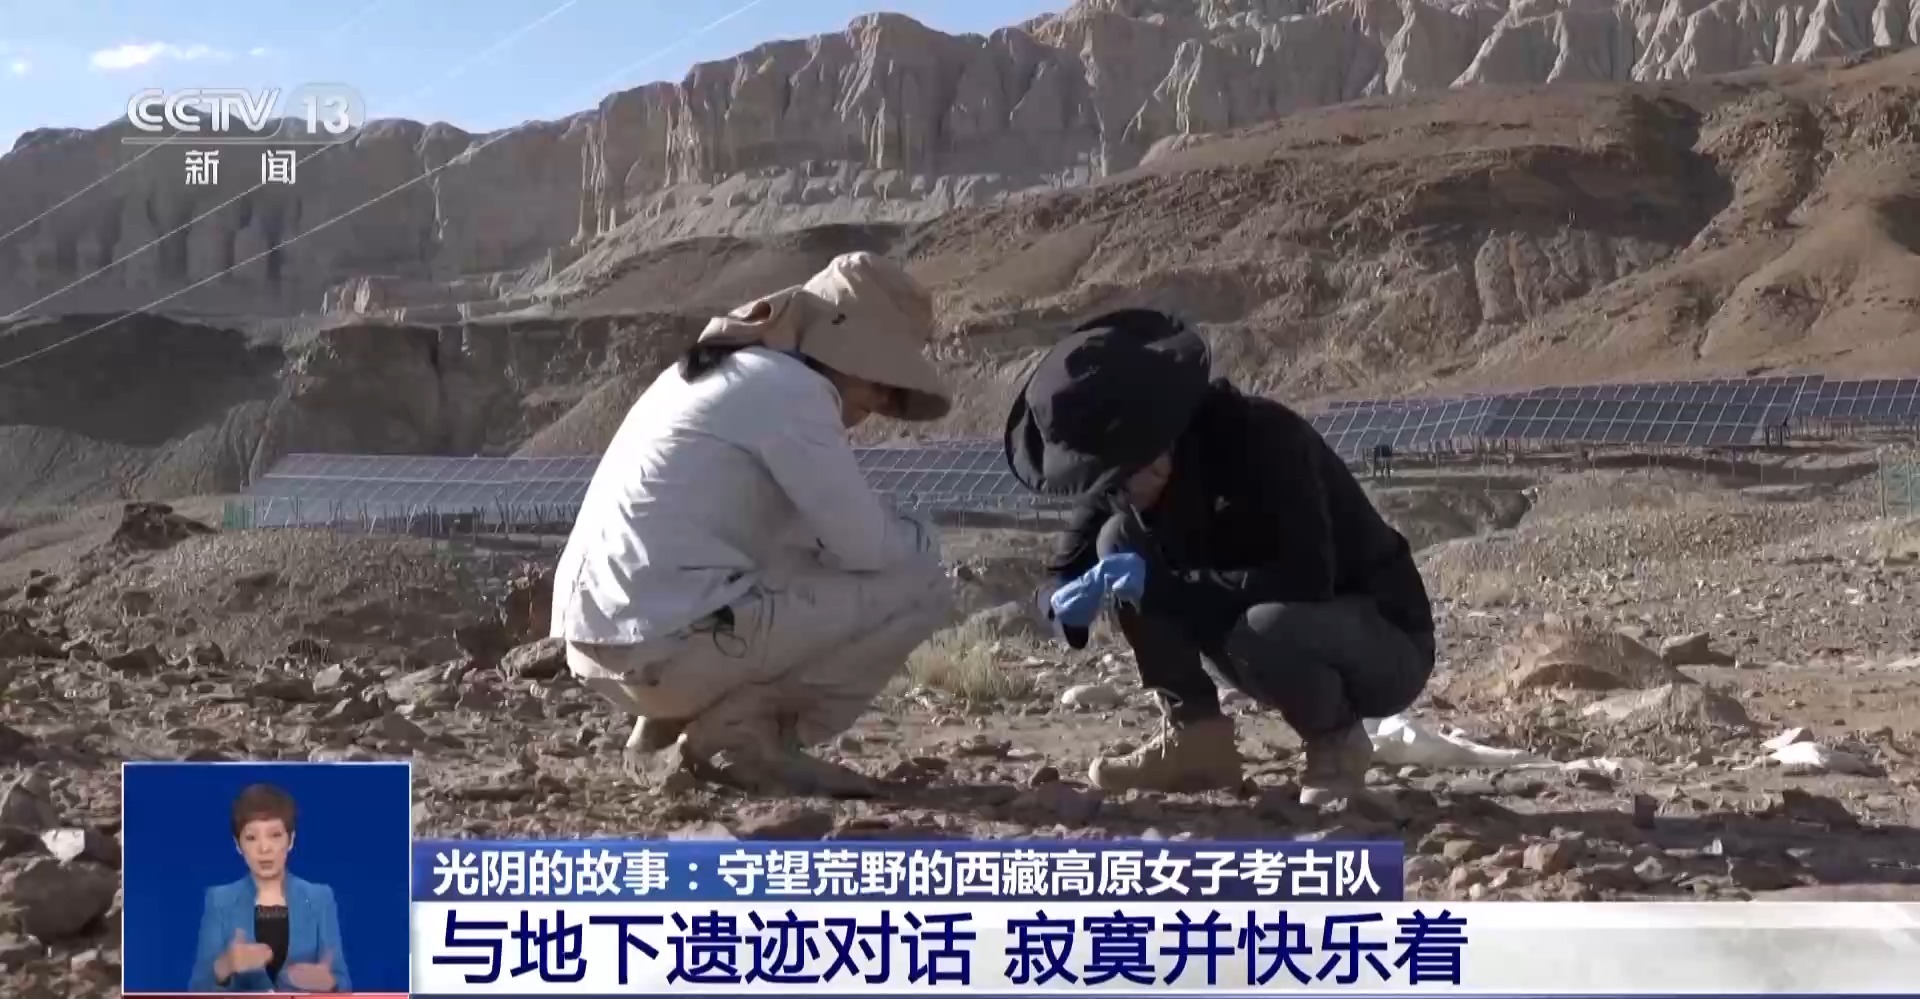 Doi membri ai echipei de femei în arheologie din Xizang examinează pietre pe teren.